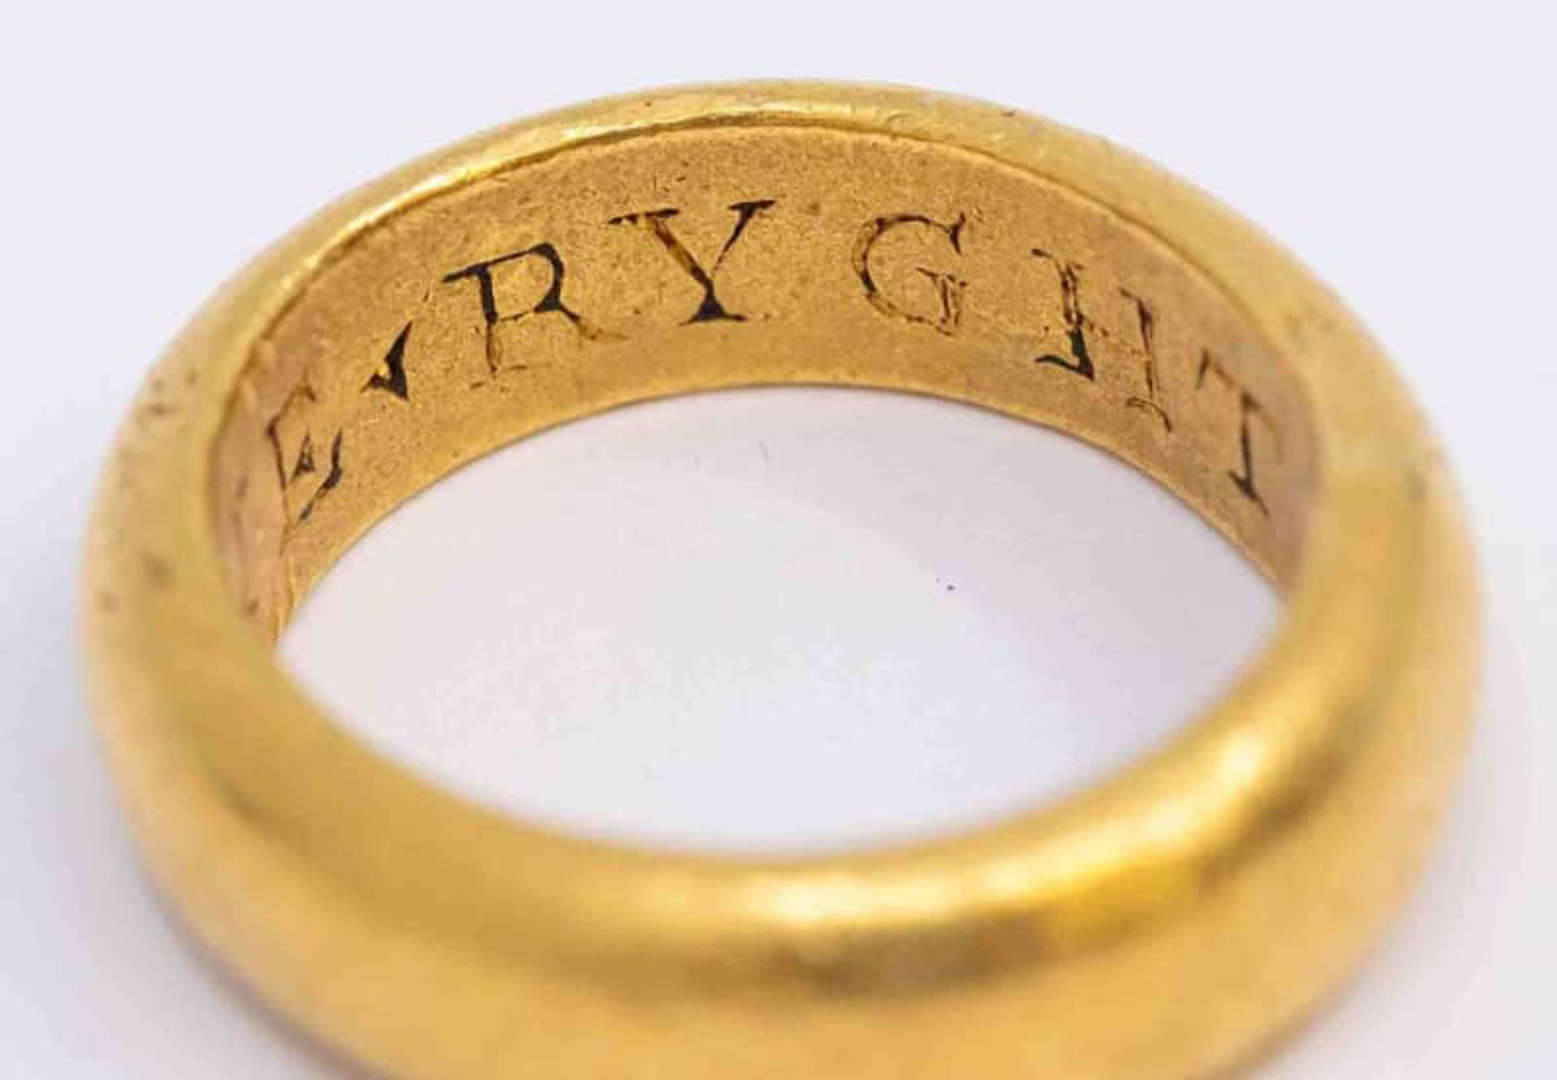 Detektorista našel zlatý prsten; mohl patřit šerifovi z Nottinghamu